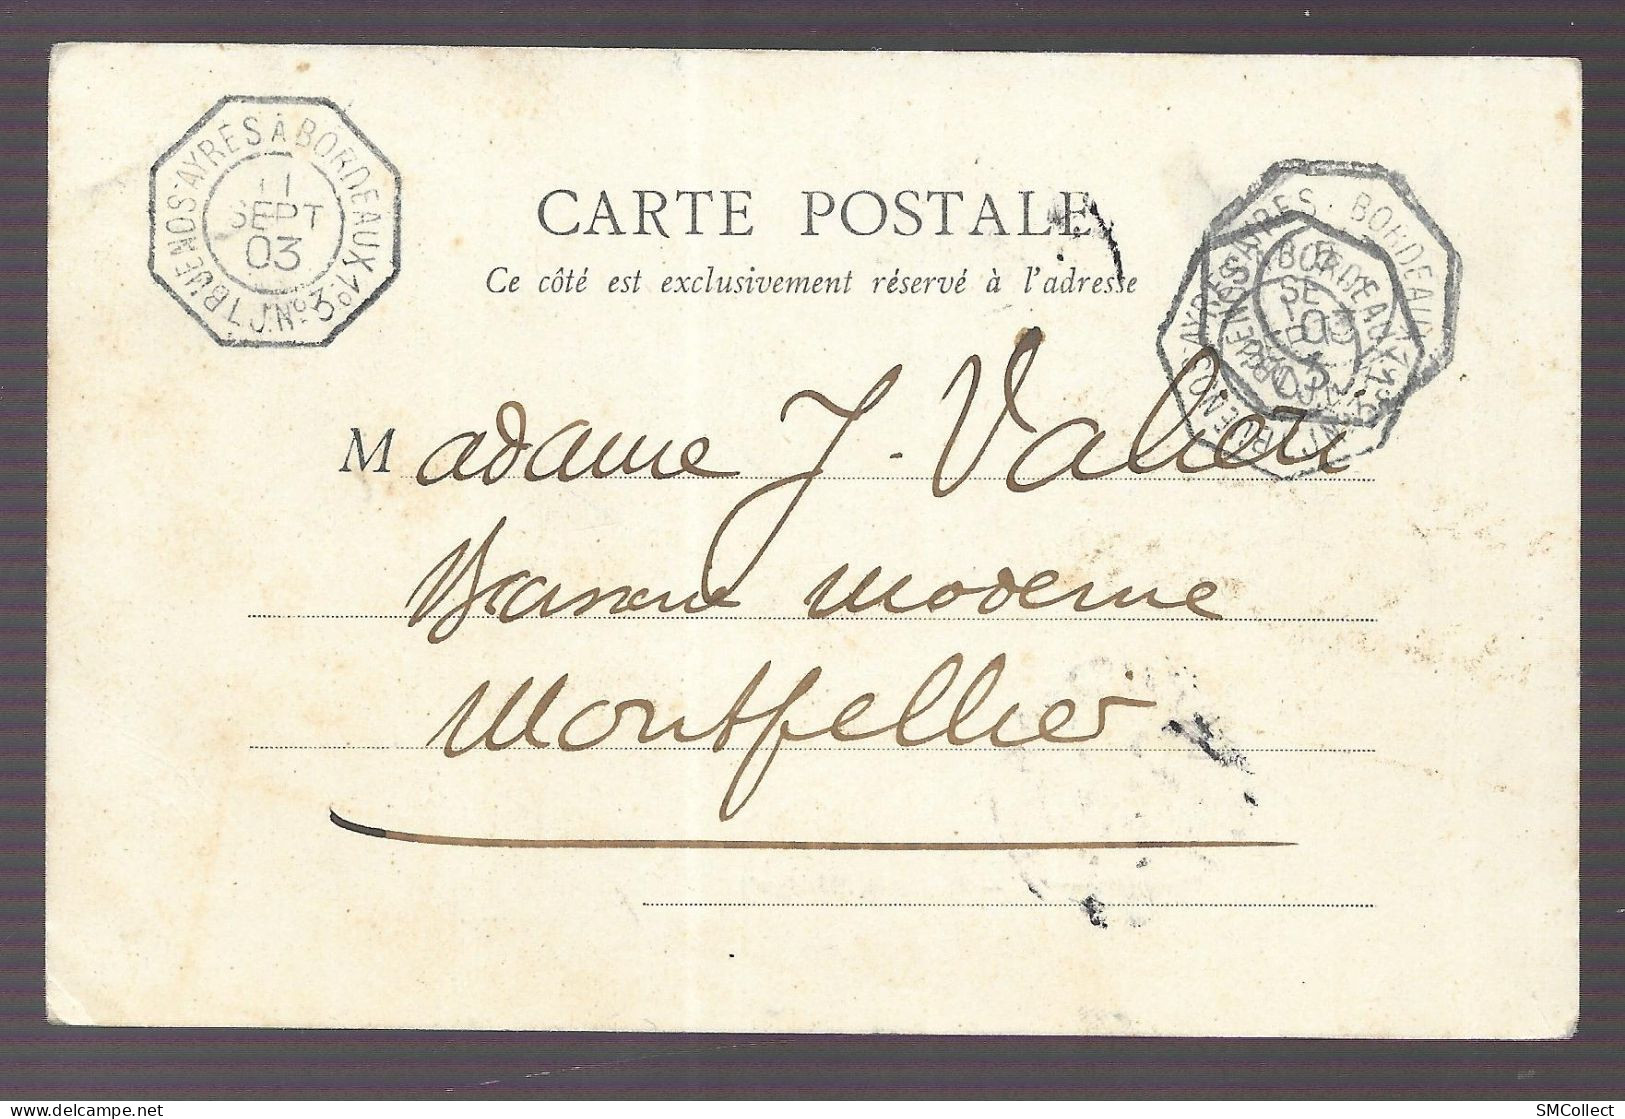 Sénégal, Cpa 1903. Rufisque, Blanchisseuses + Cachet Ambulant LJ. N°3. Buenos Ayres à Bordeaux 1° (A17p18) - Senegal